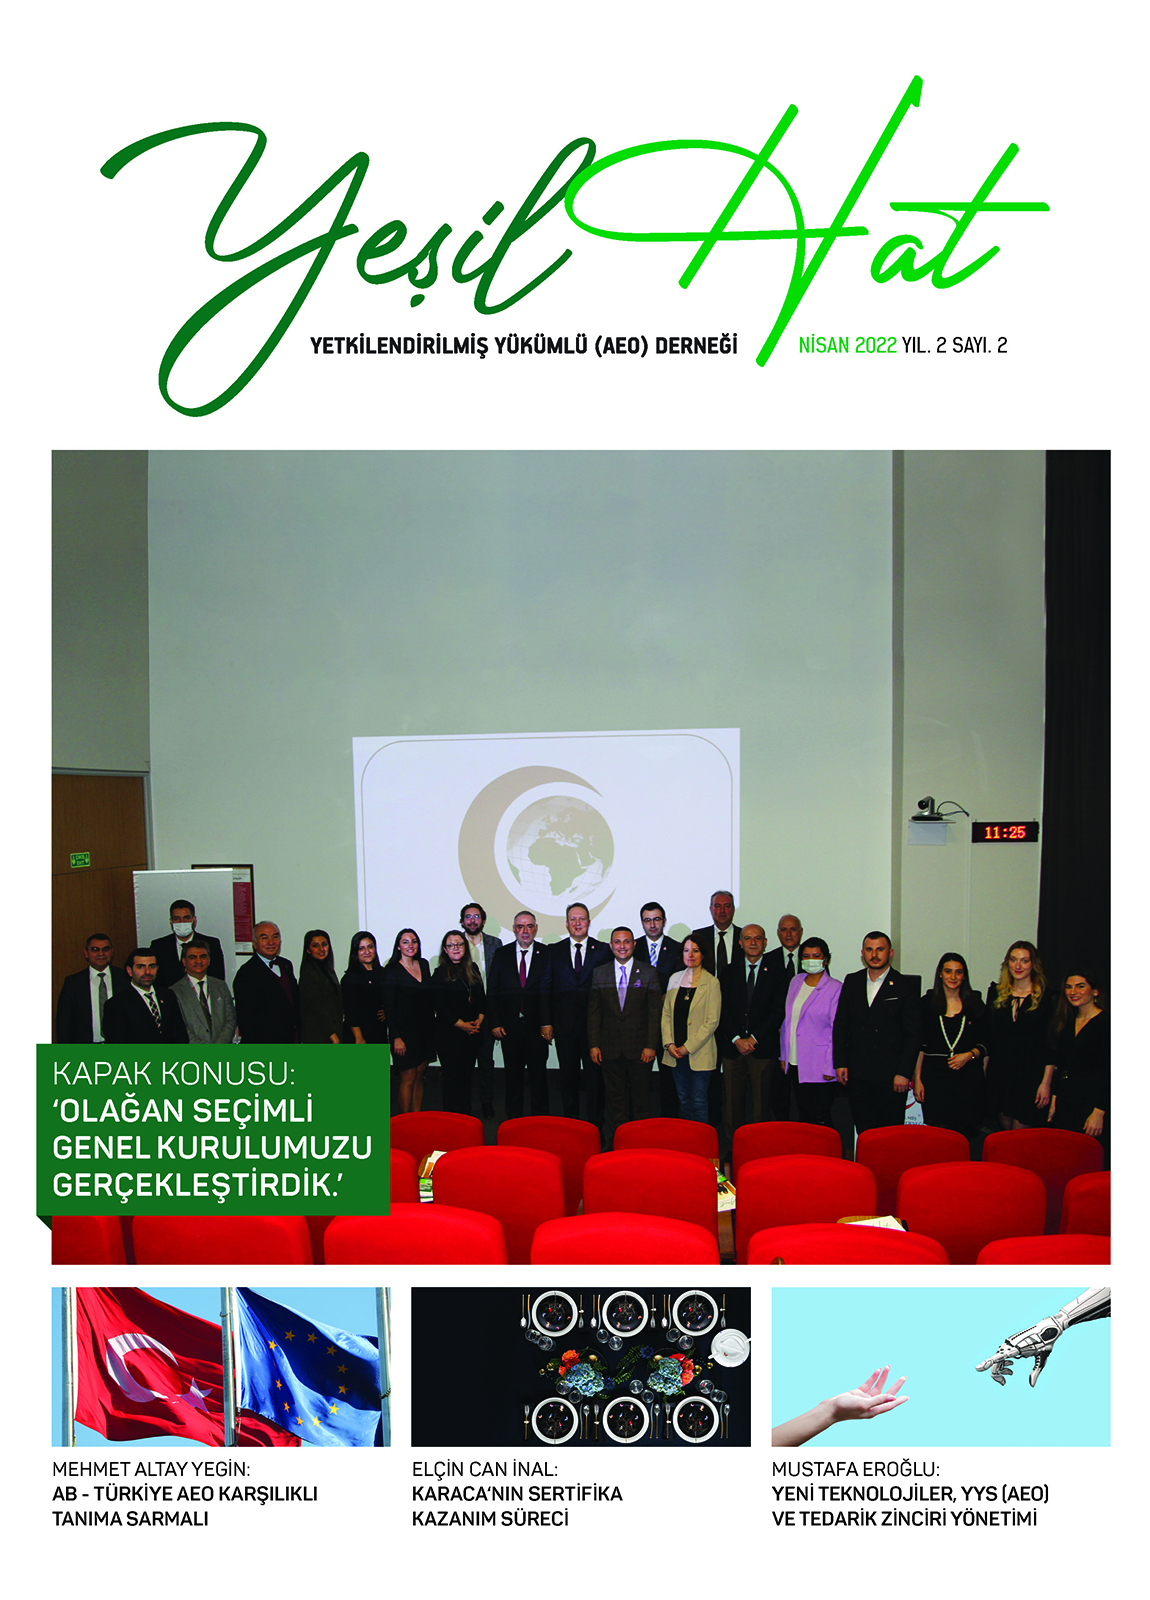 Yetkilendirilmiş Yükümlü Derneği (AEO) - Yeşil Hat Dergisi - 2.Sayı Nisan 2022 